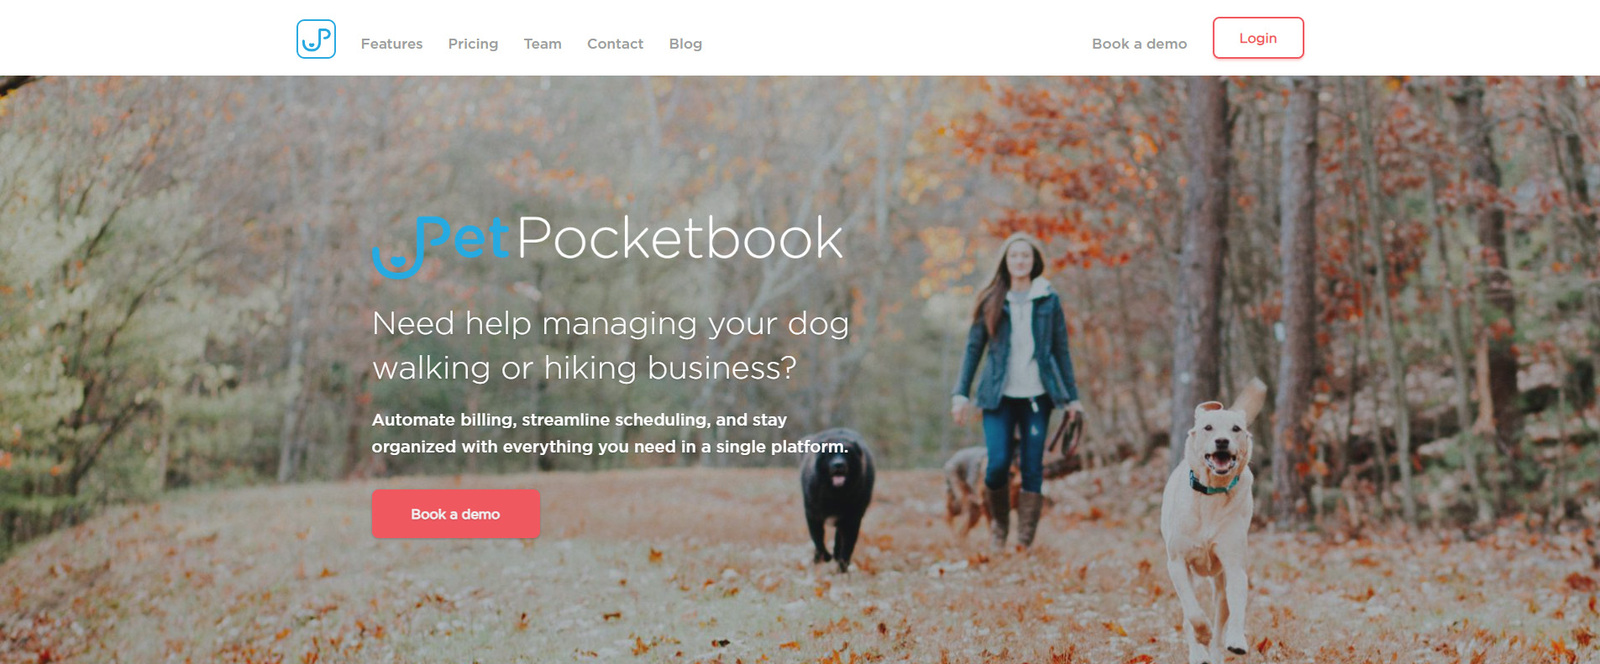 PetPocketbook 视图，这是宠物遛狗者最好的宠物护理软件选项之一。